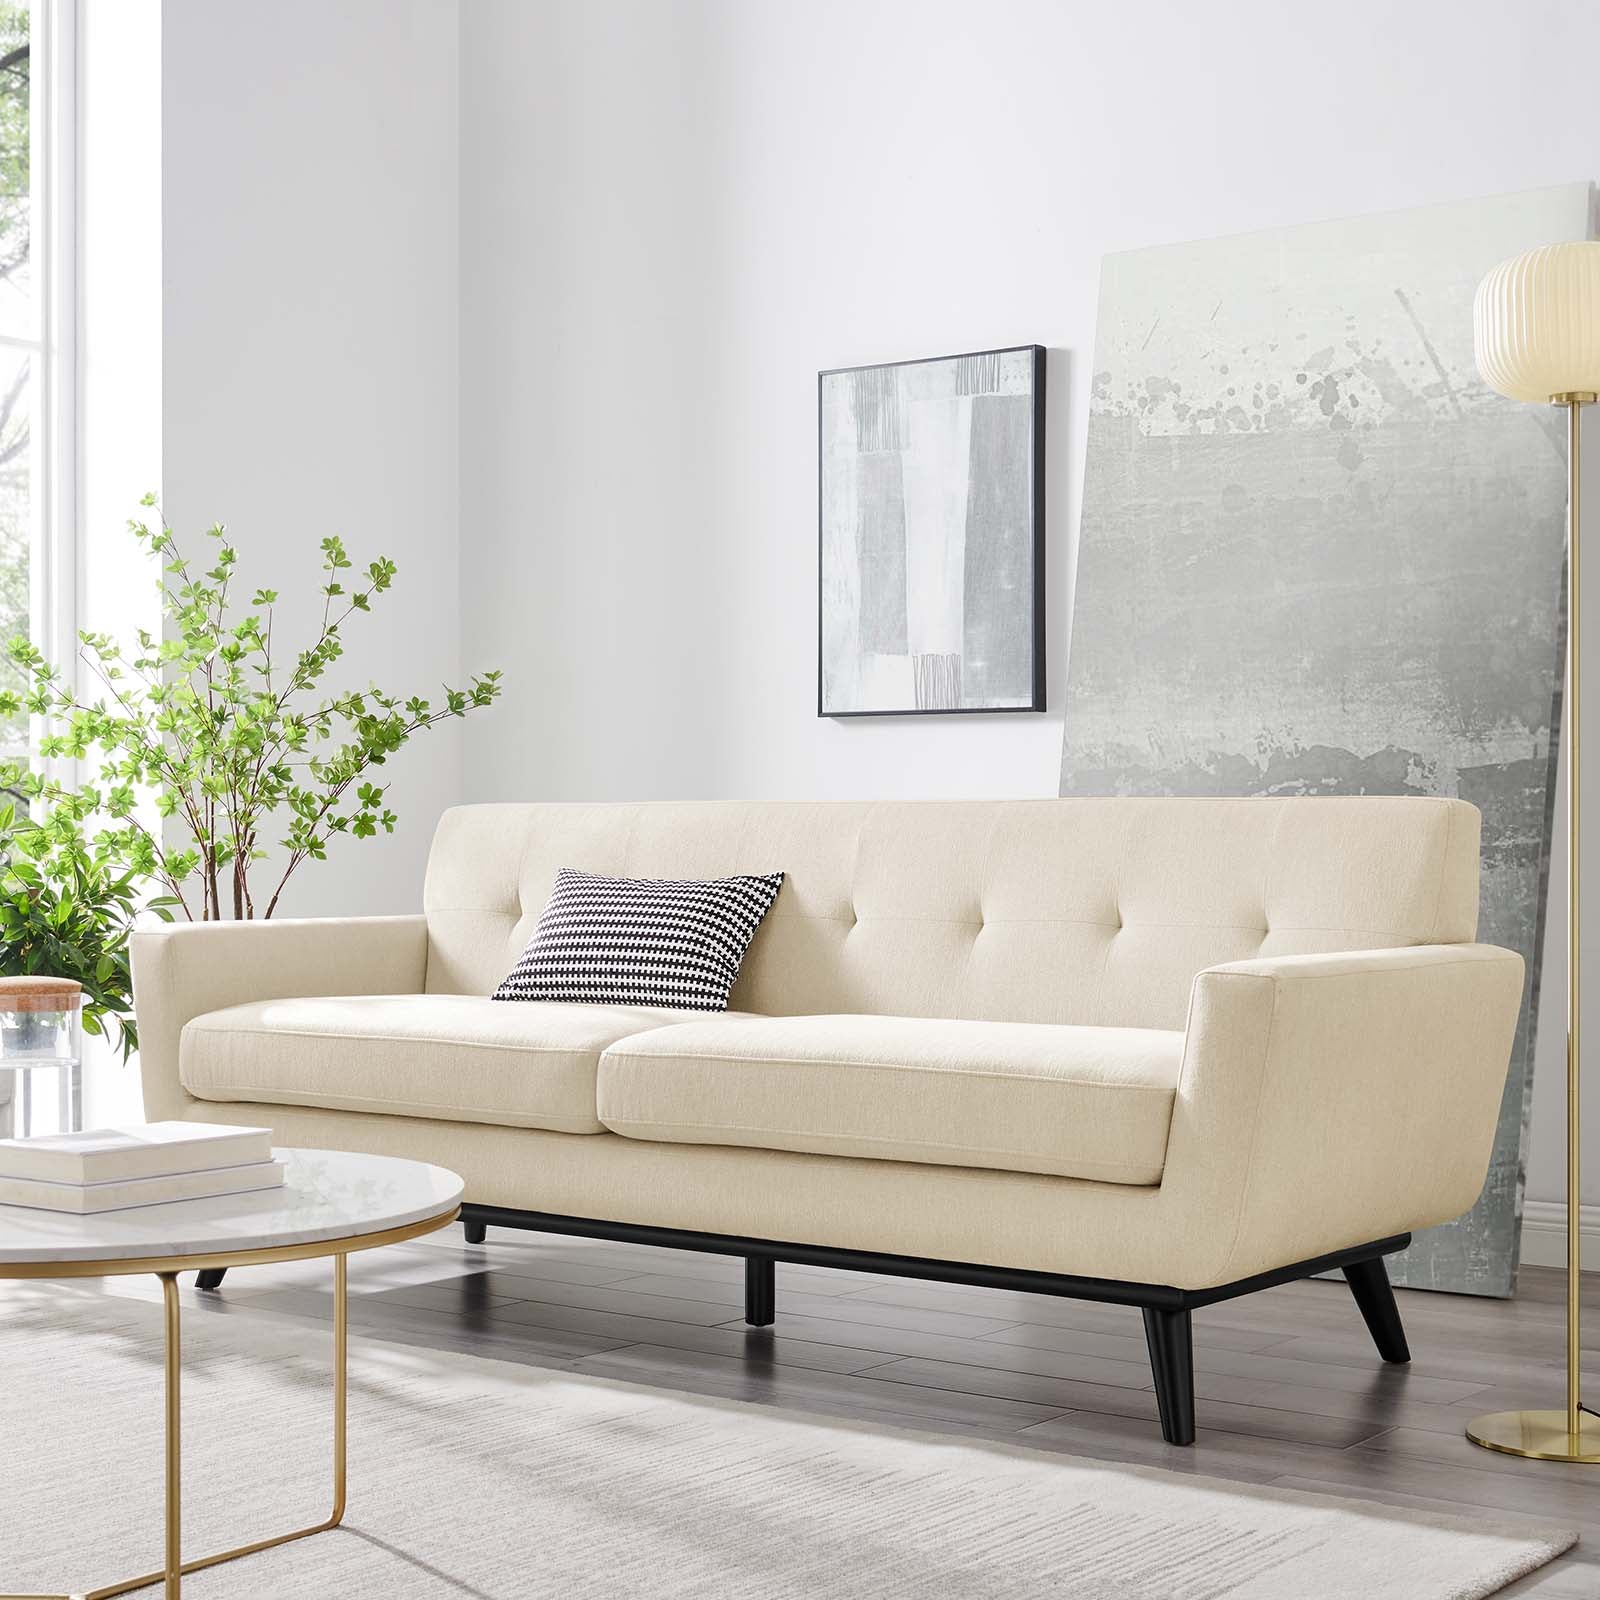 Engage Herringbone Fabric Sofa - East Shore Modern Home Furnishings